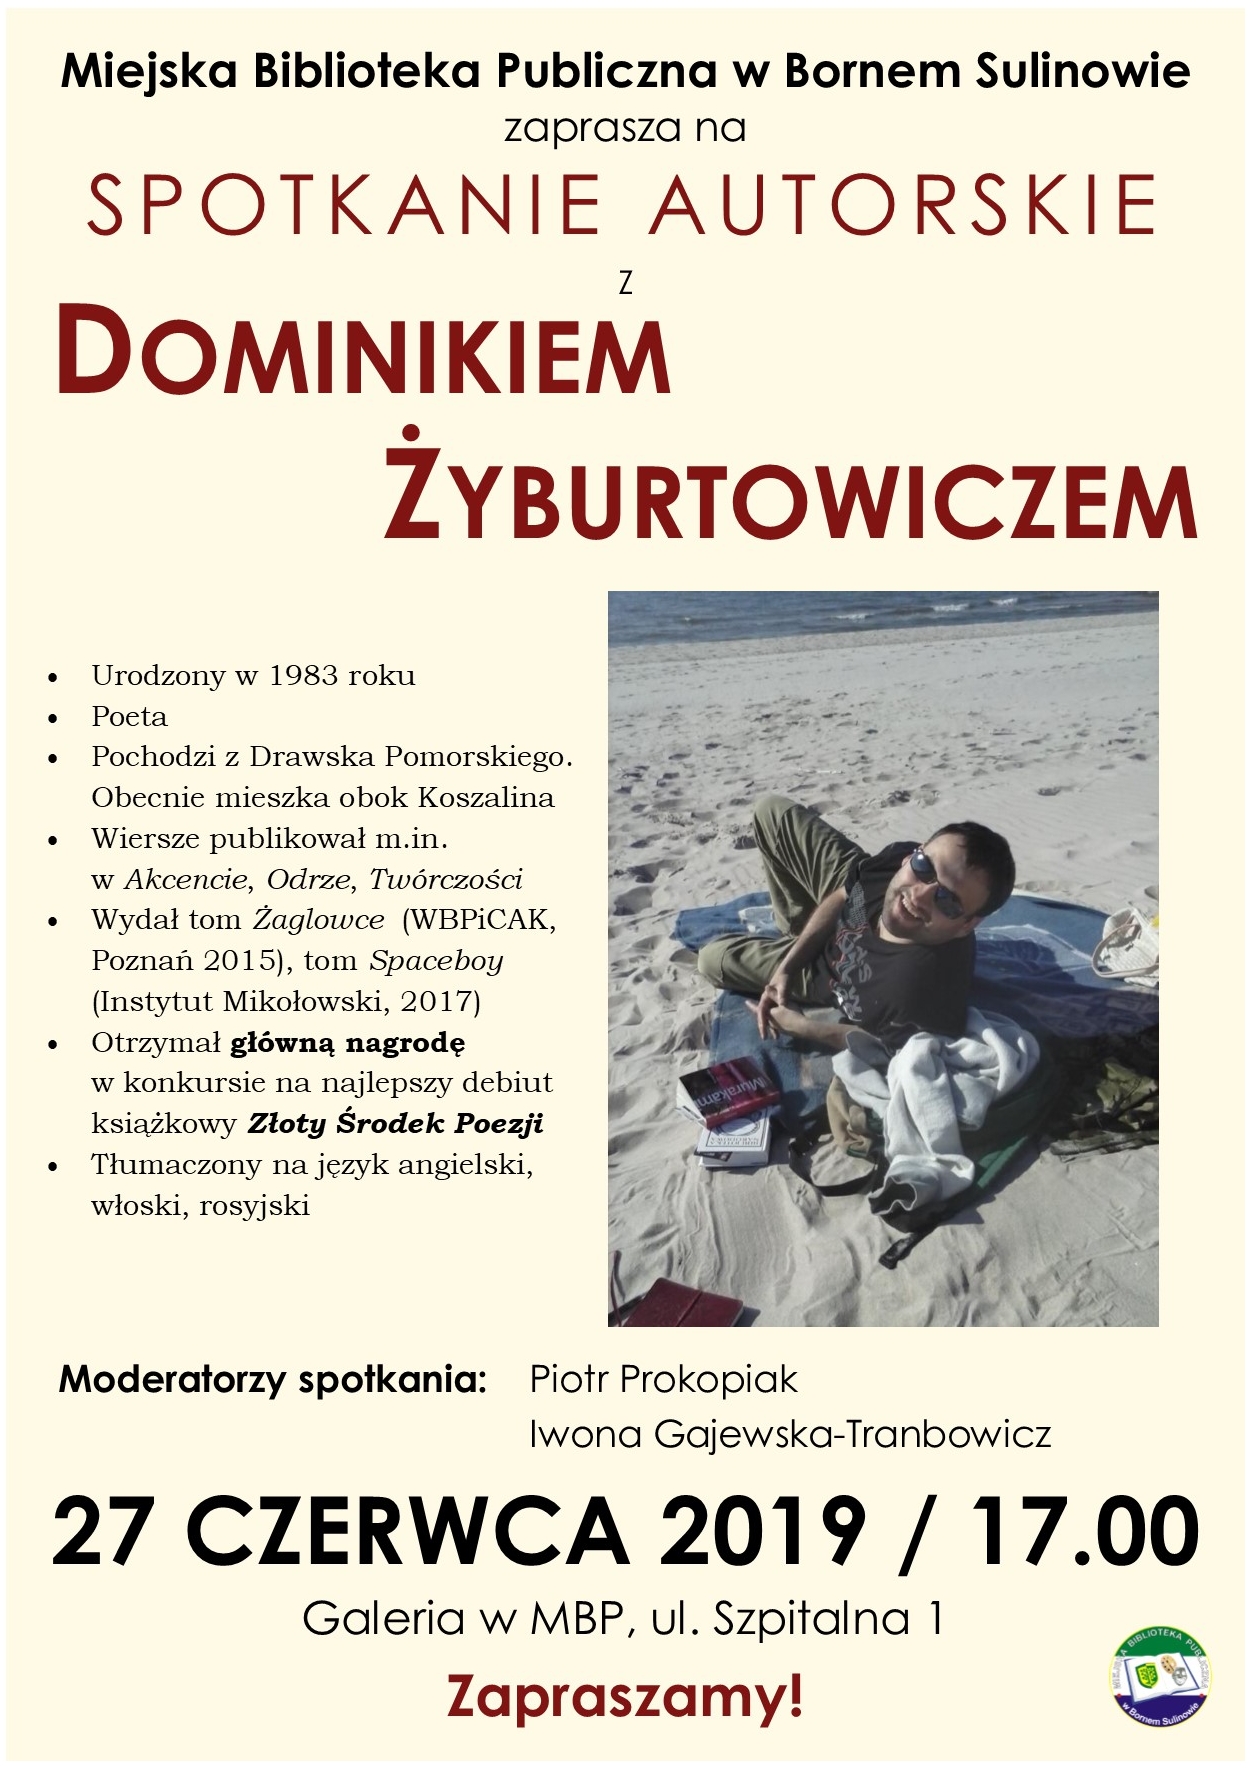 Zaproszenie na spotkanie autorskie z Dominikiem Żyburtowiczem